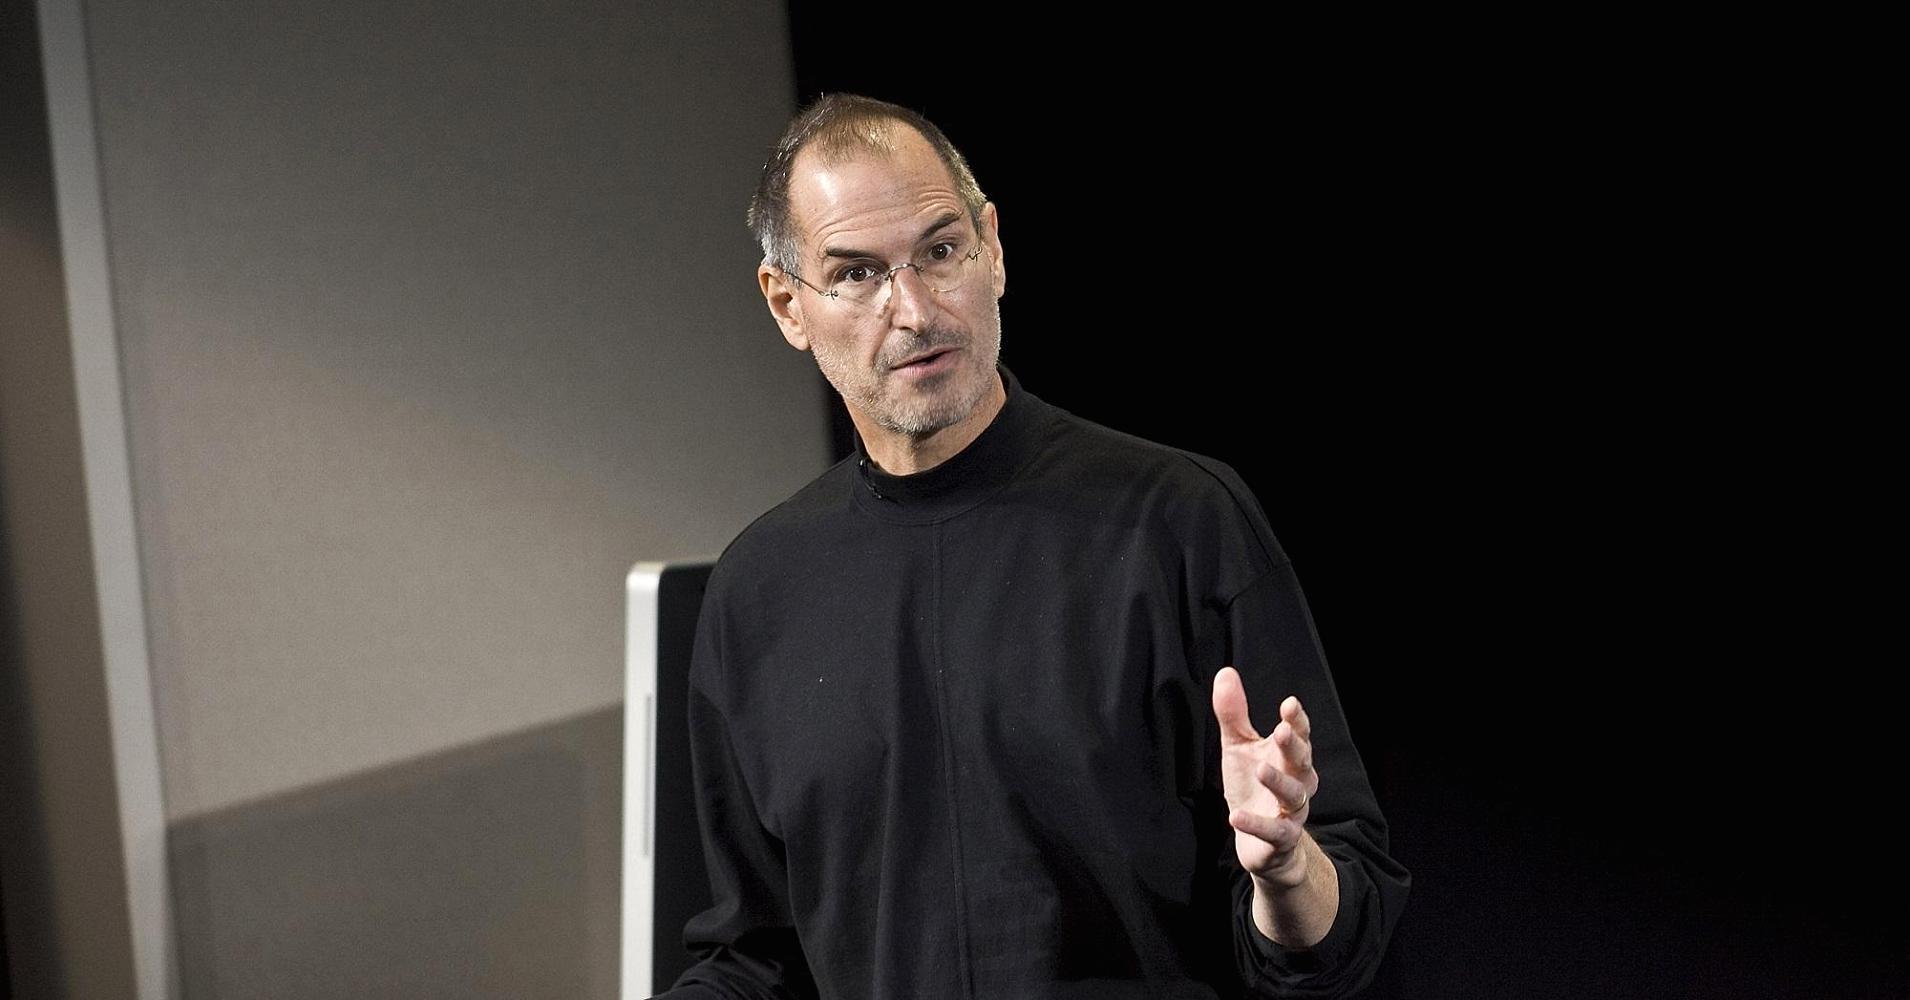 Steve Jobs’ın Kötü Biri Olduğu Söylentilerini Haklı Çıkaran 8 Gerçek